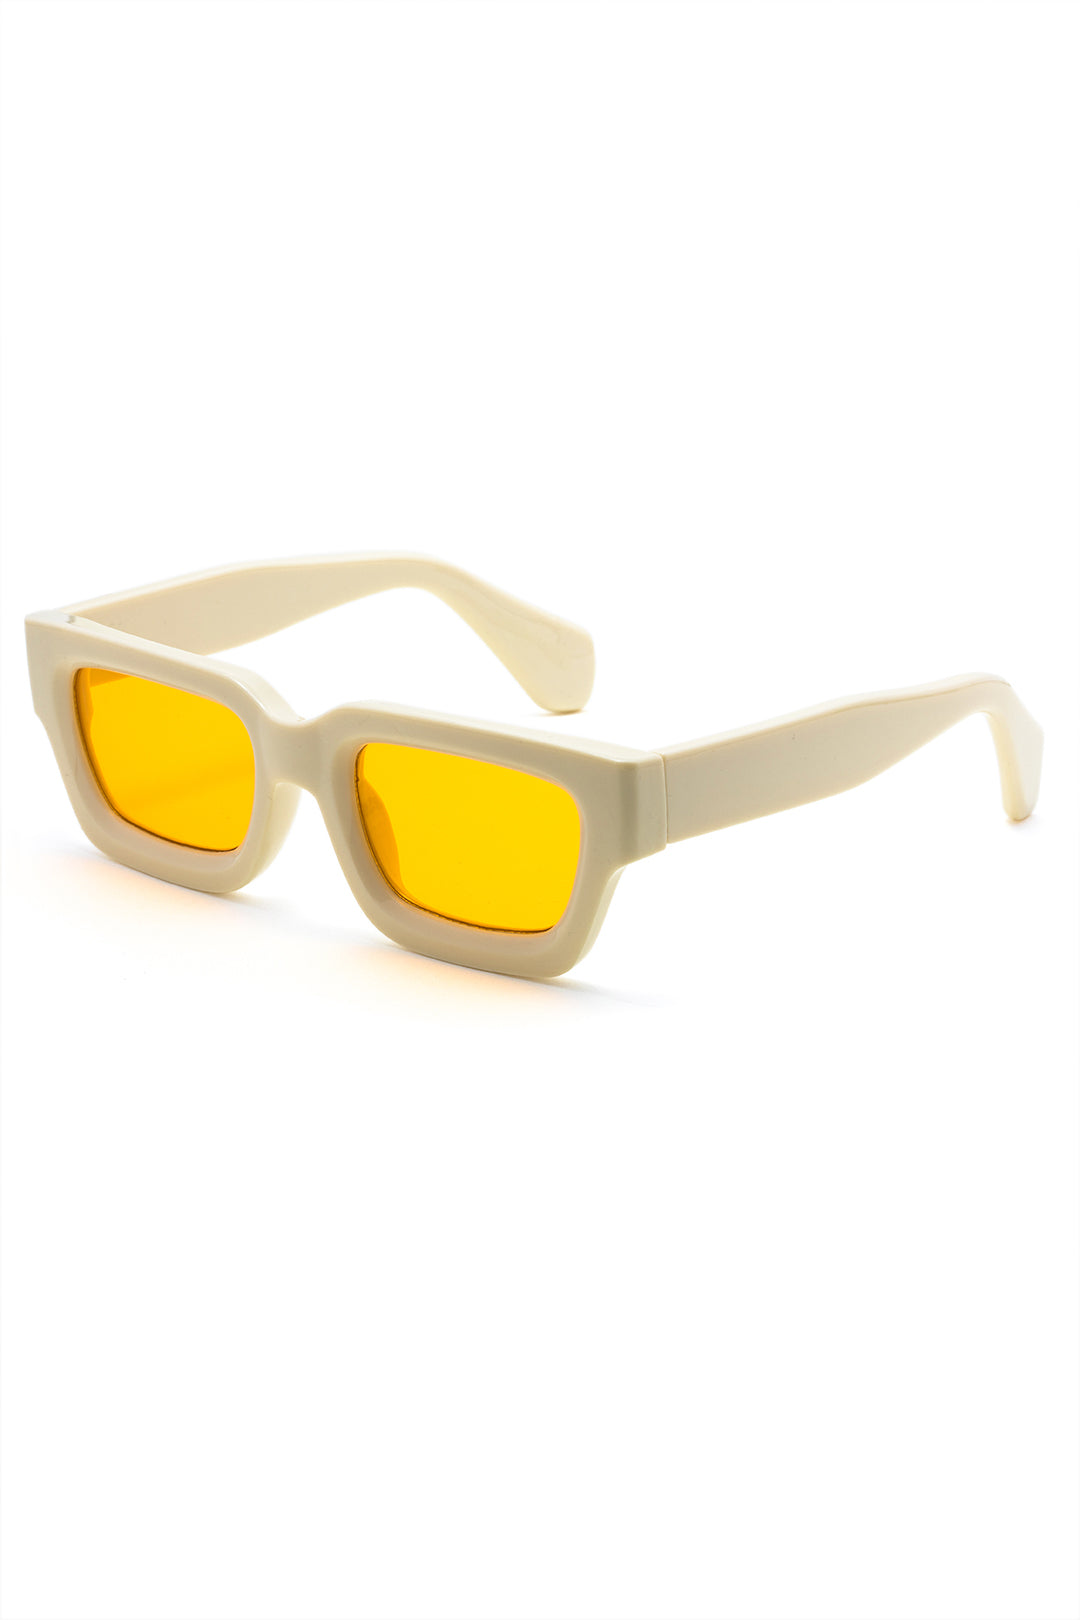 Contrast Square Frame Sunglasses